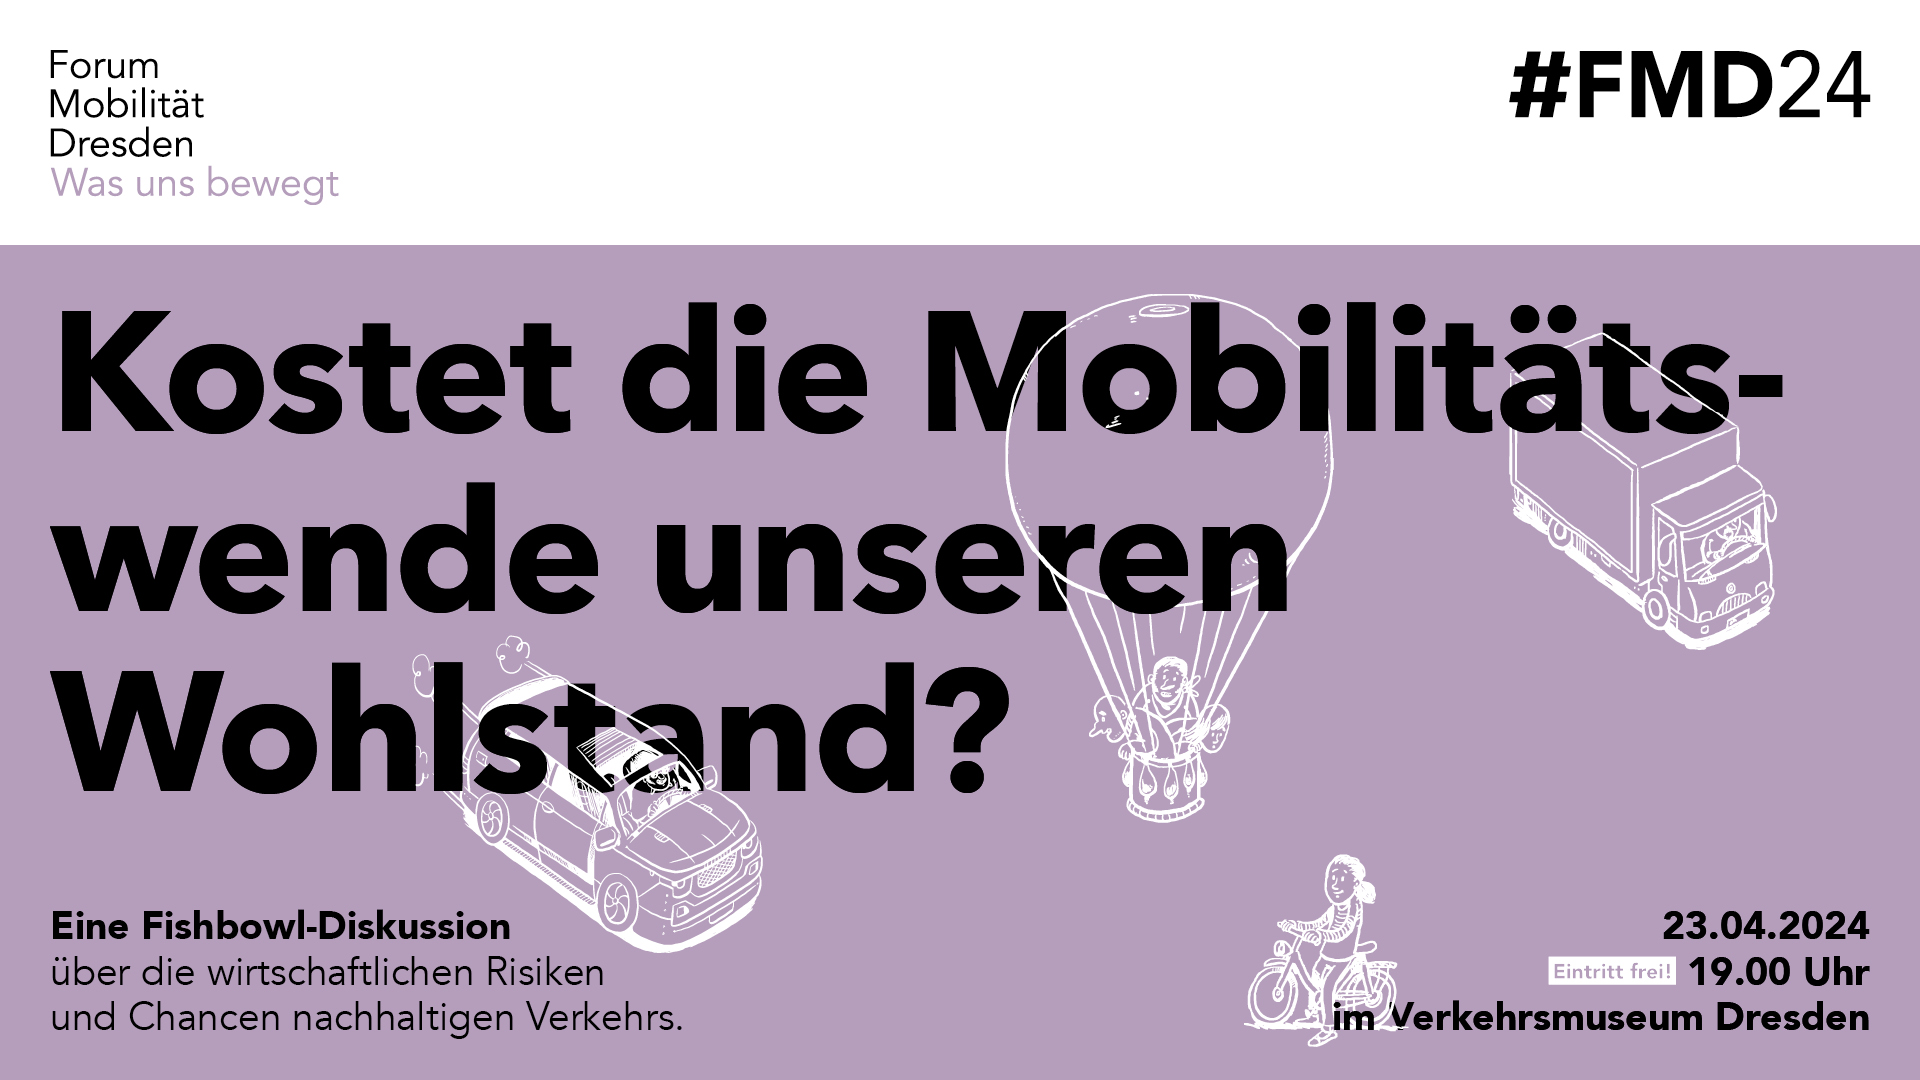 Titelmotiv "Kostet die Mobilitätswende unseren Wohlstand?